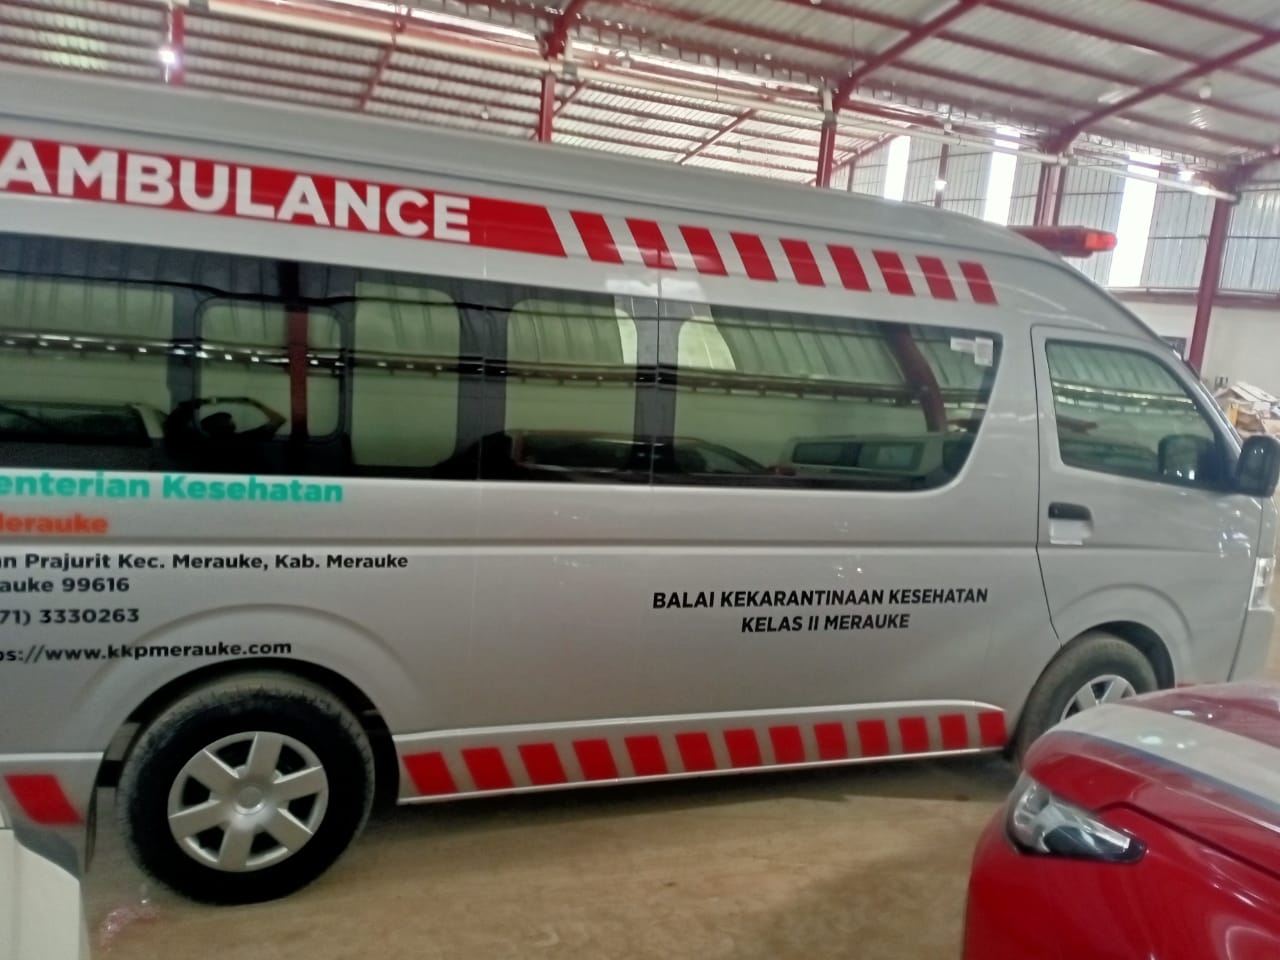 Harga Karoseri Modifikasi Ambulance Berkualitas Jawa Timur